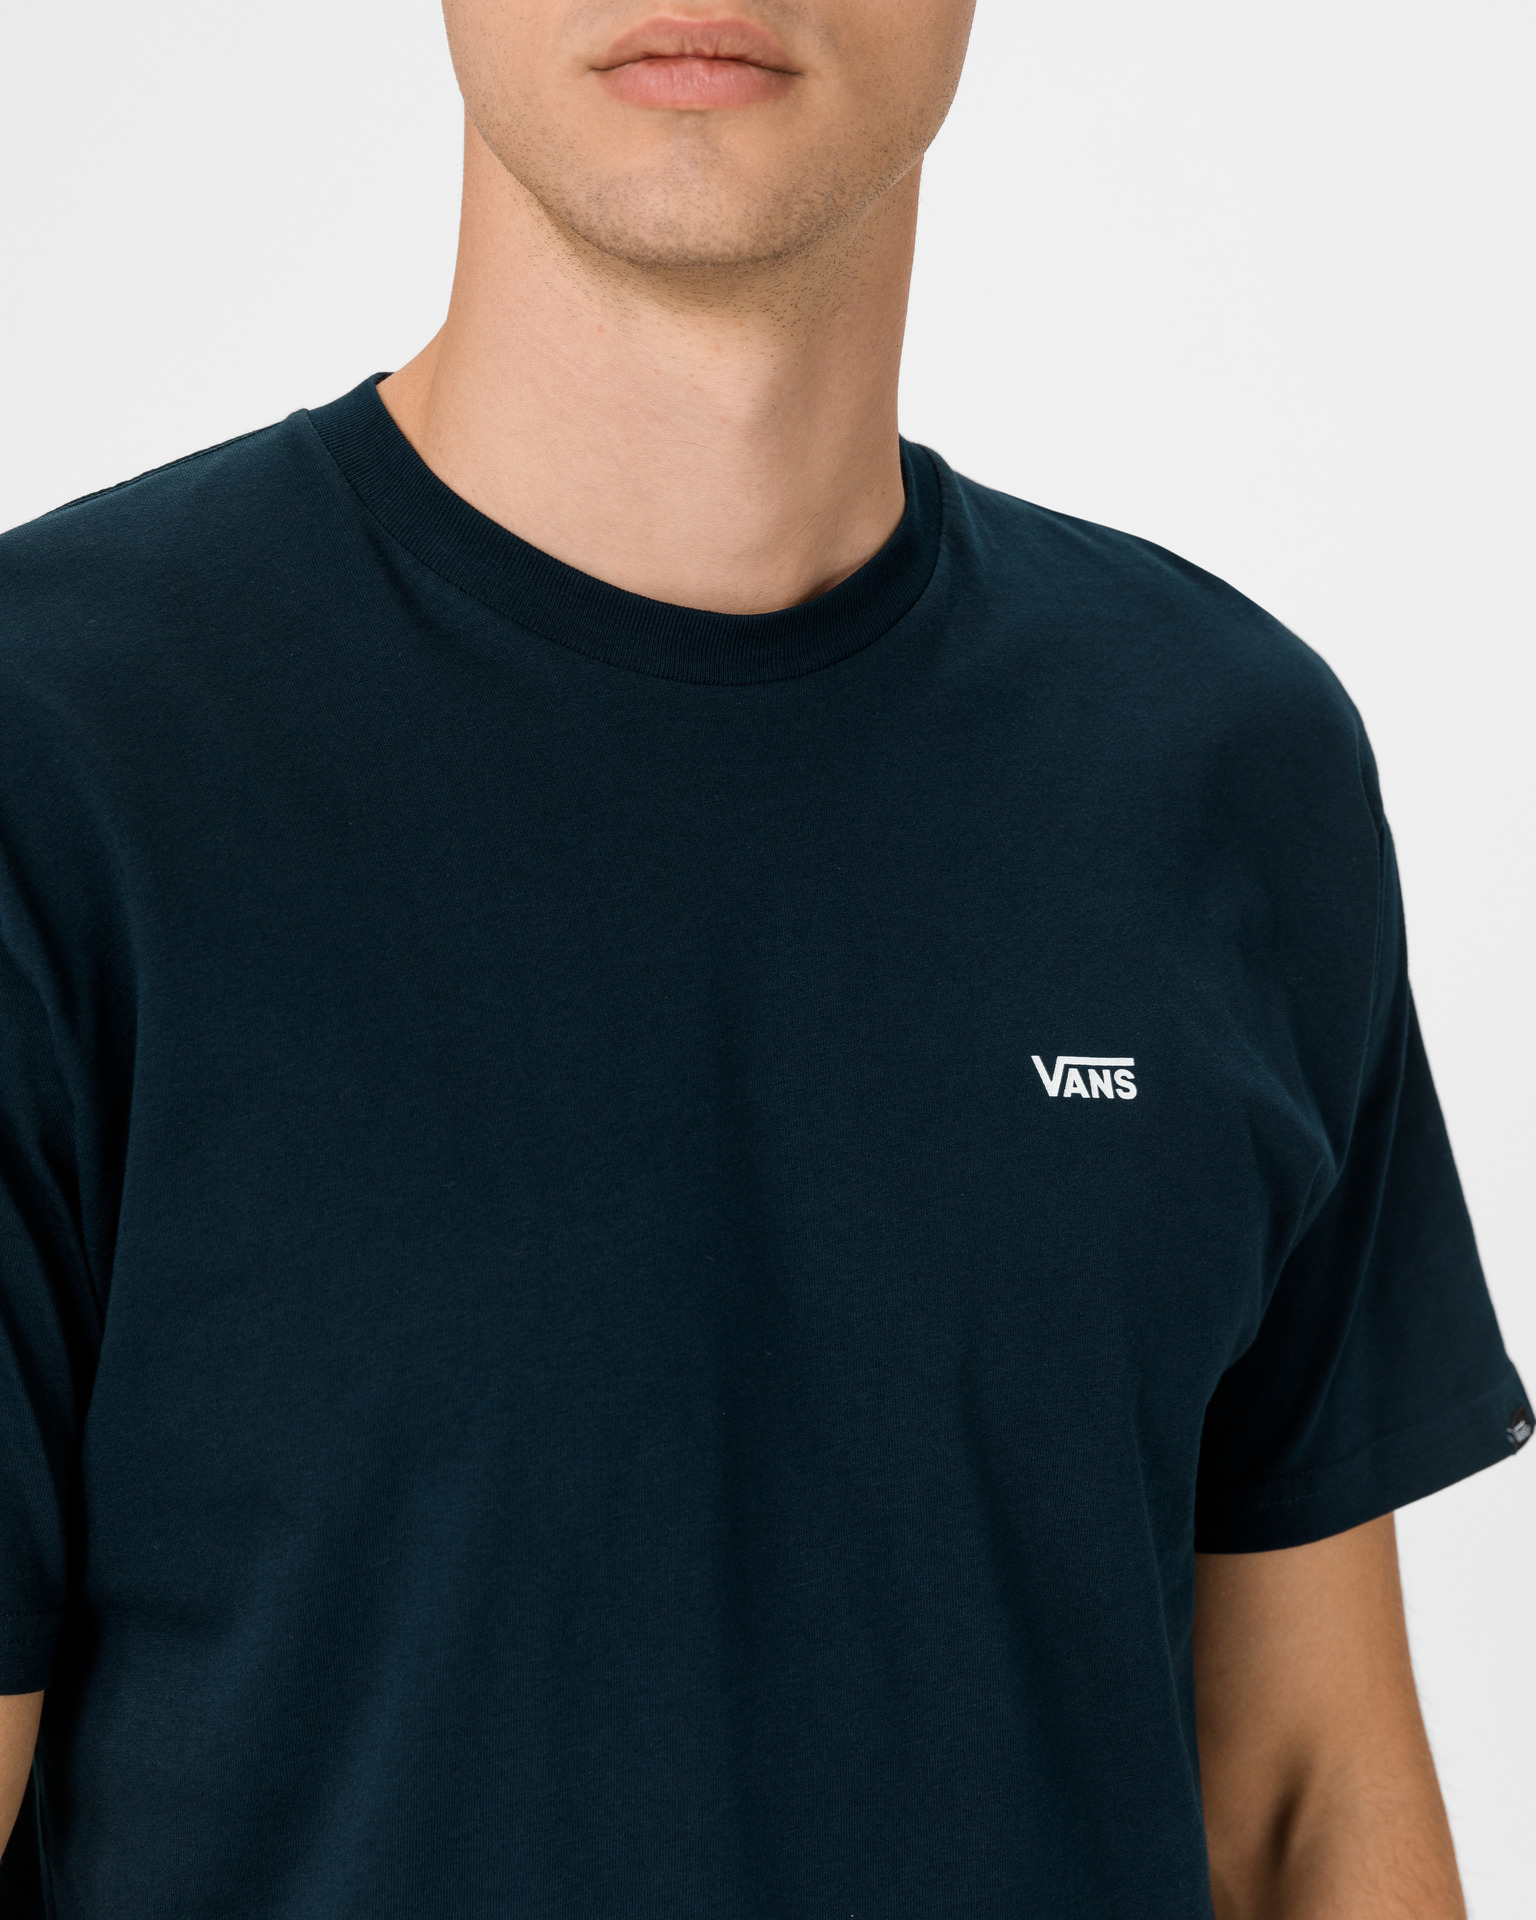 Left Chest Vans T-shirt Logo -